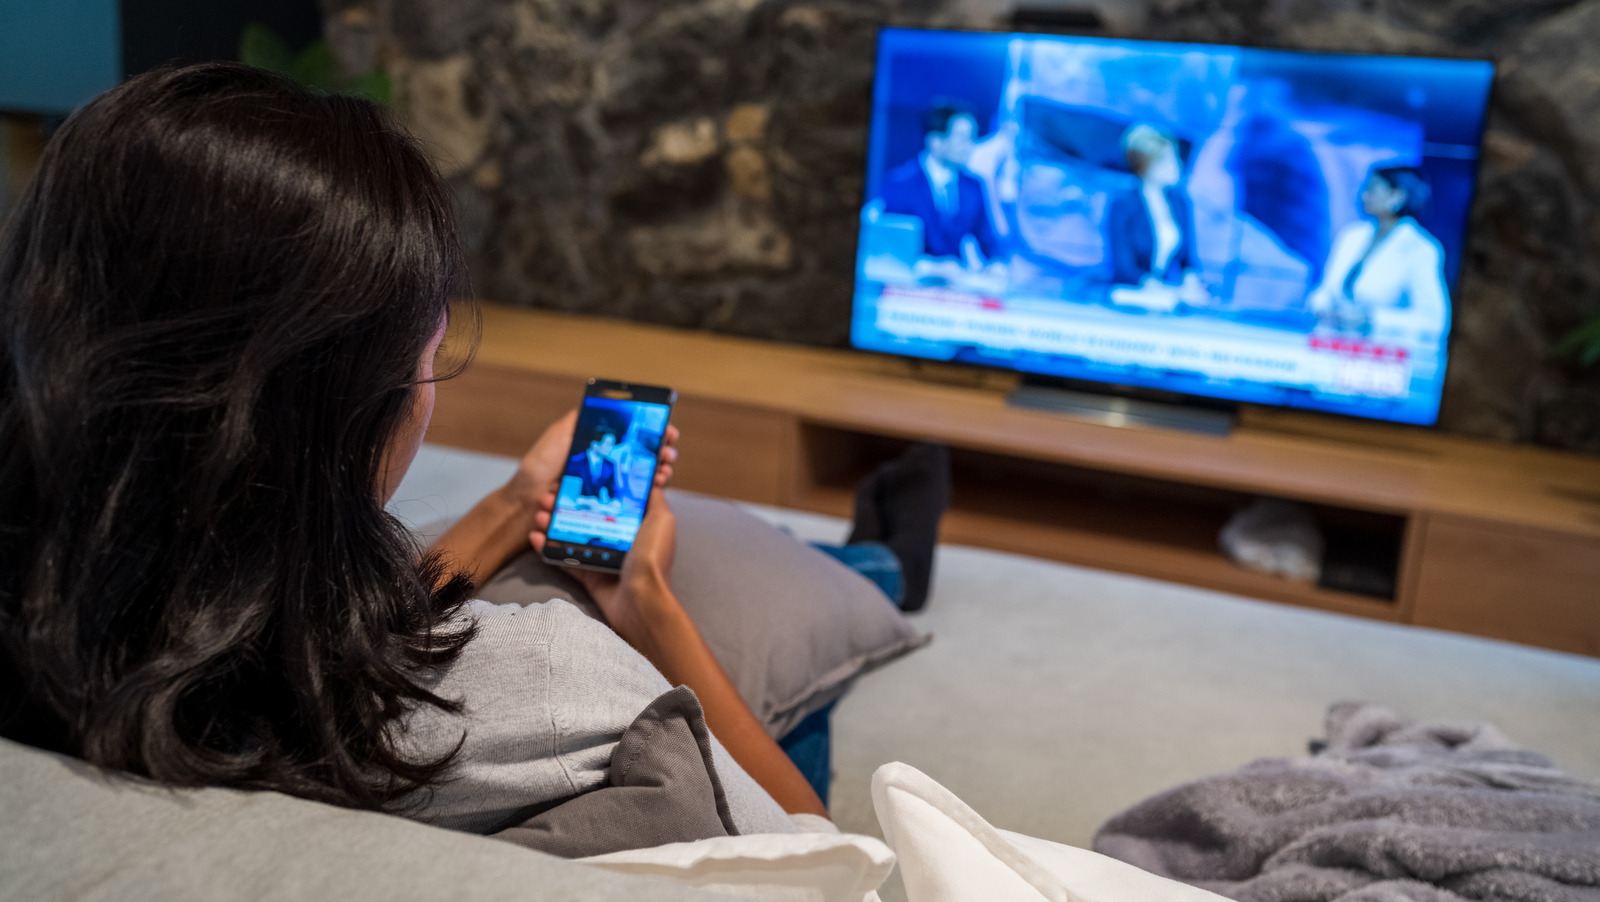 تفاوت بین انعکاس صفحه و ارسال به تلویزیون هوشمند چیست؟